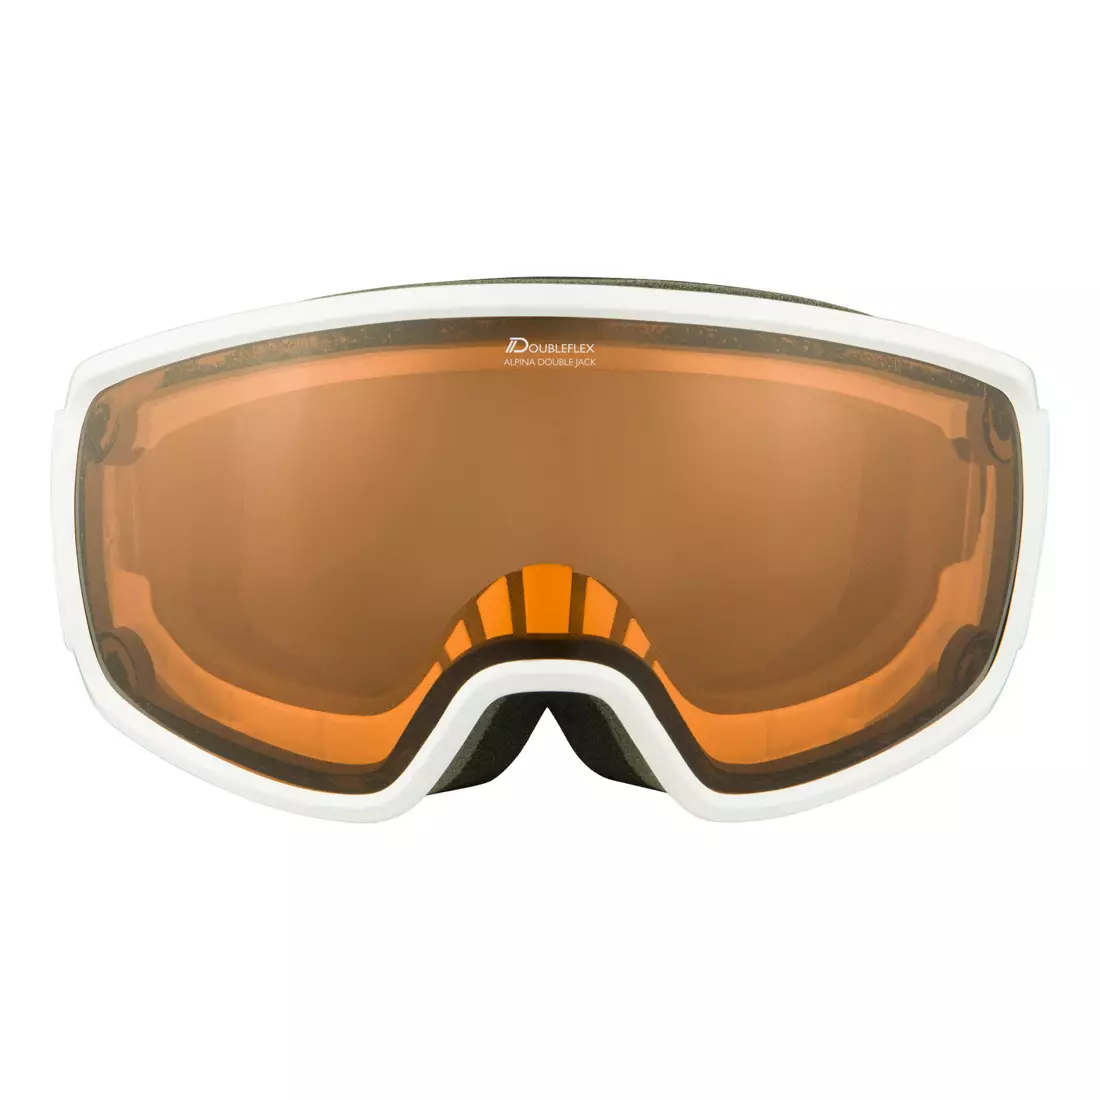 ALPINA DOUBLE JACK MAG Q-LITE ski-/snowboardbrille, white gloss